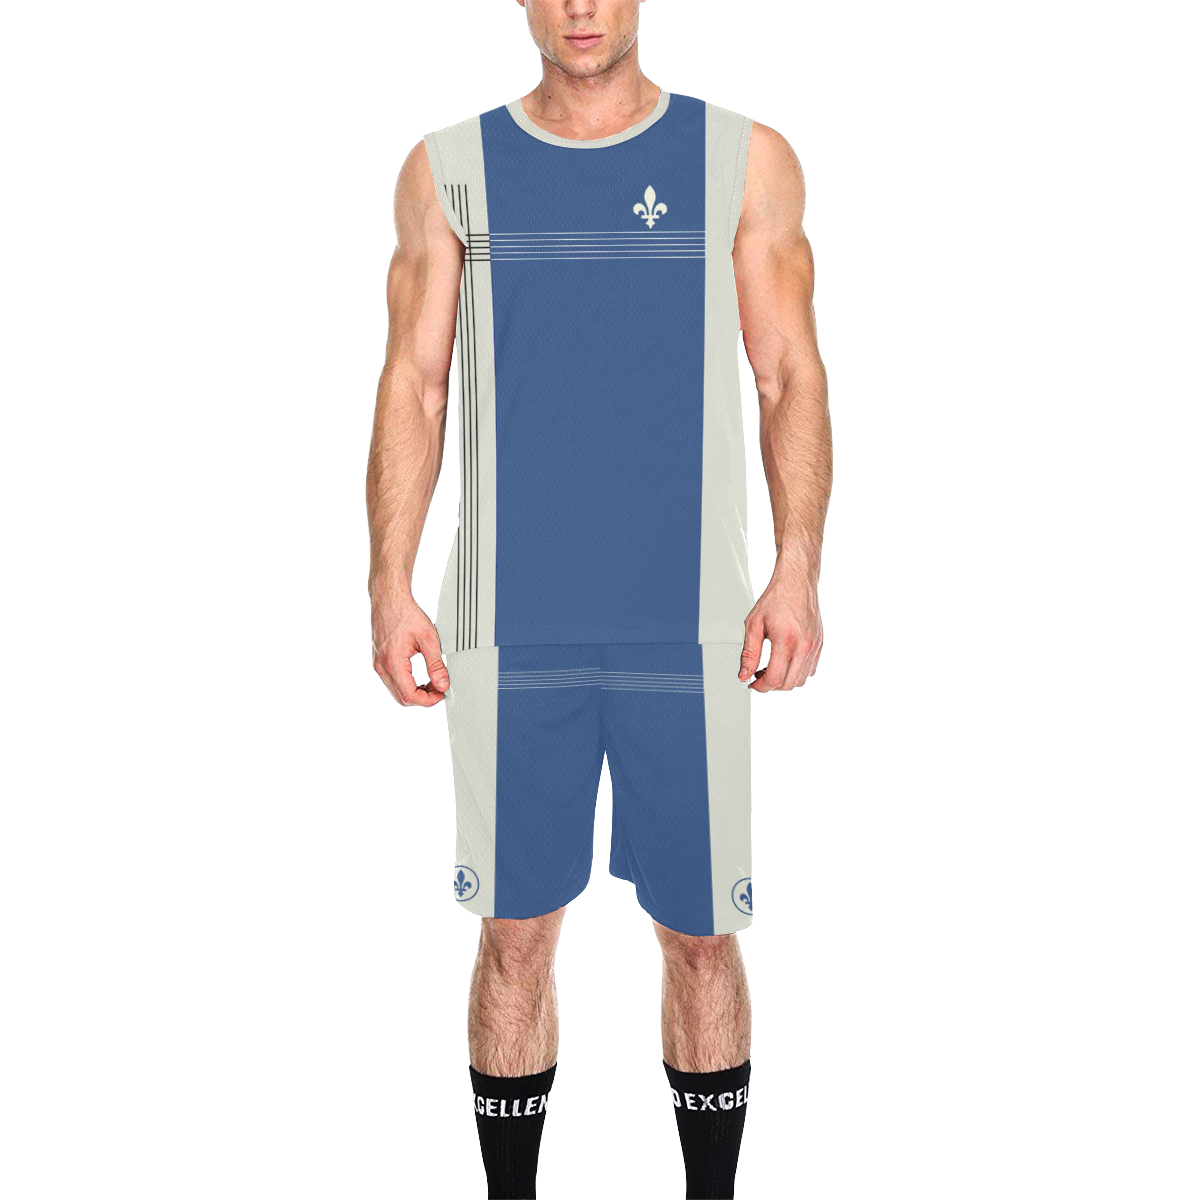 QUEBEC SPORT All Over Print Basketball Uniform